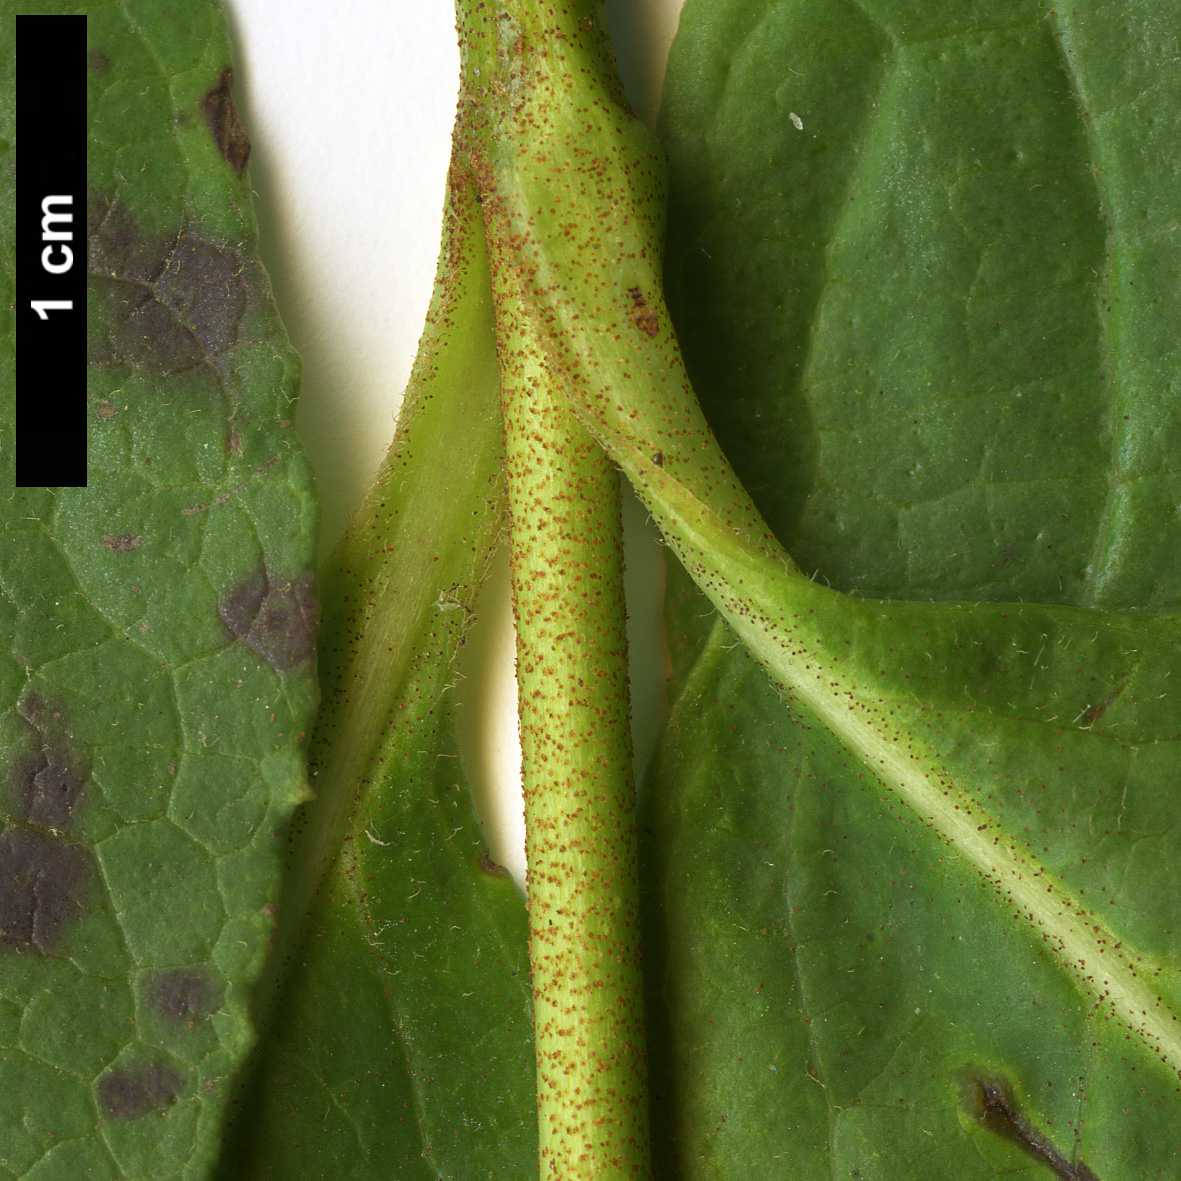 High resolution image: Family: Adoxaceae - Genus: Viburnum - Taxon: nudum